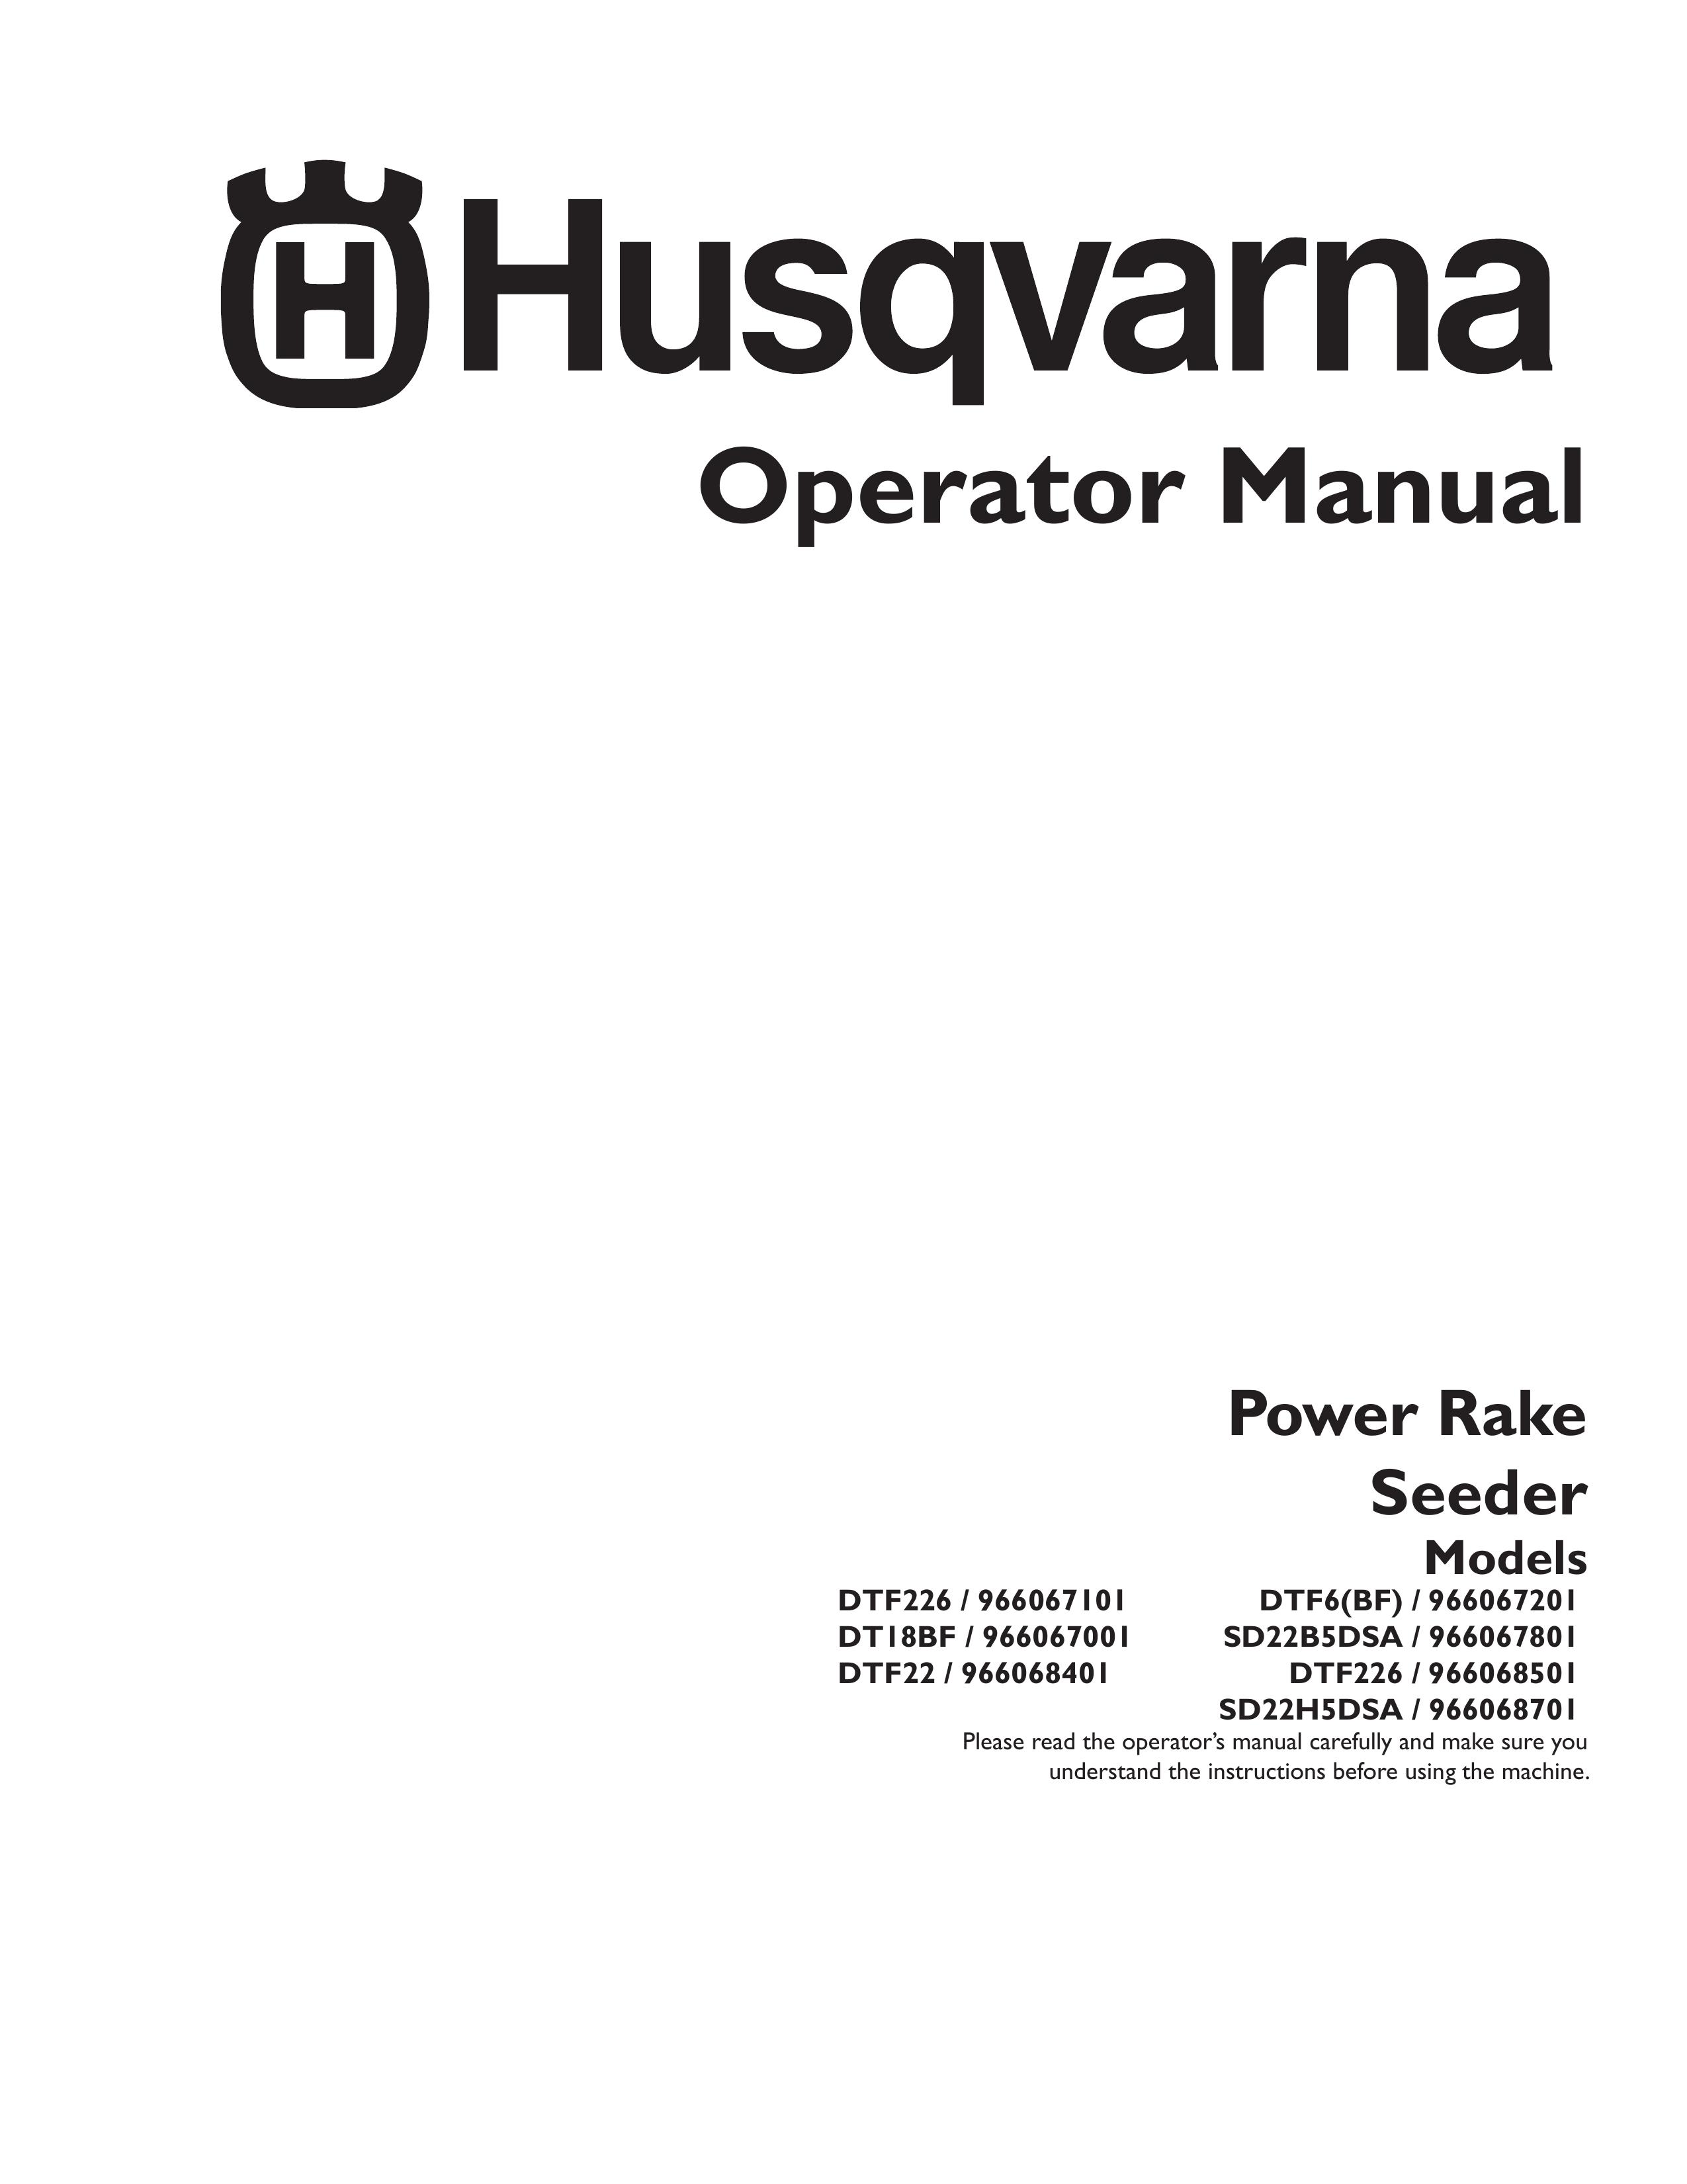 Husqvarna DTF6(BF) Spreader User Manual